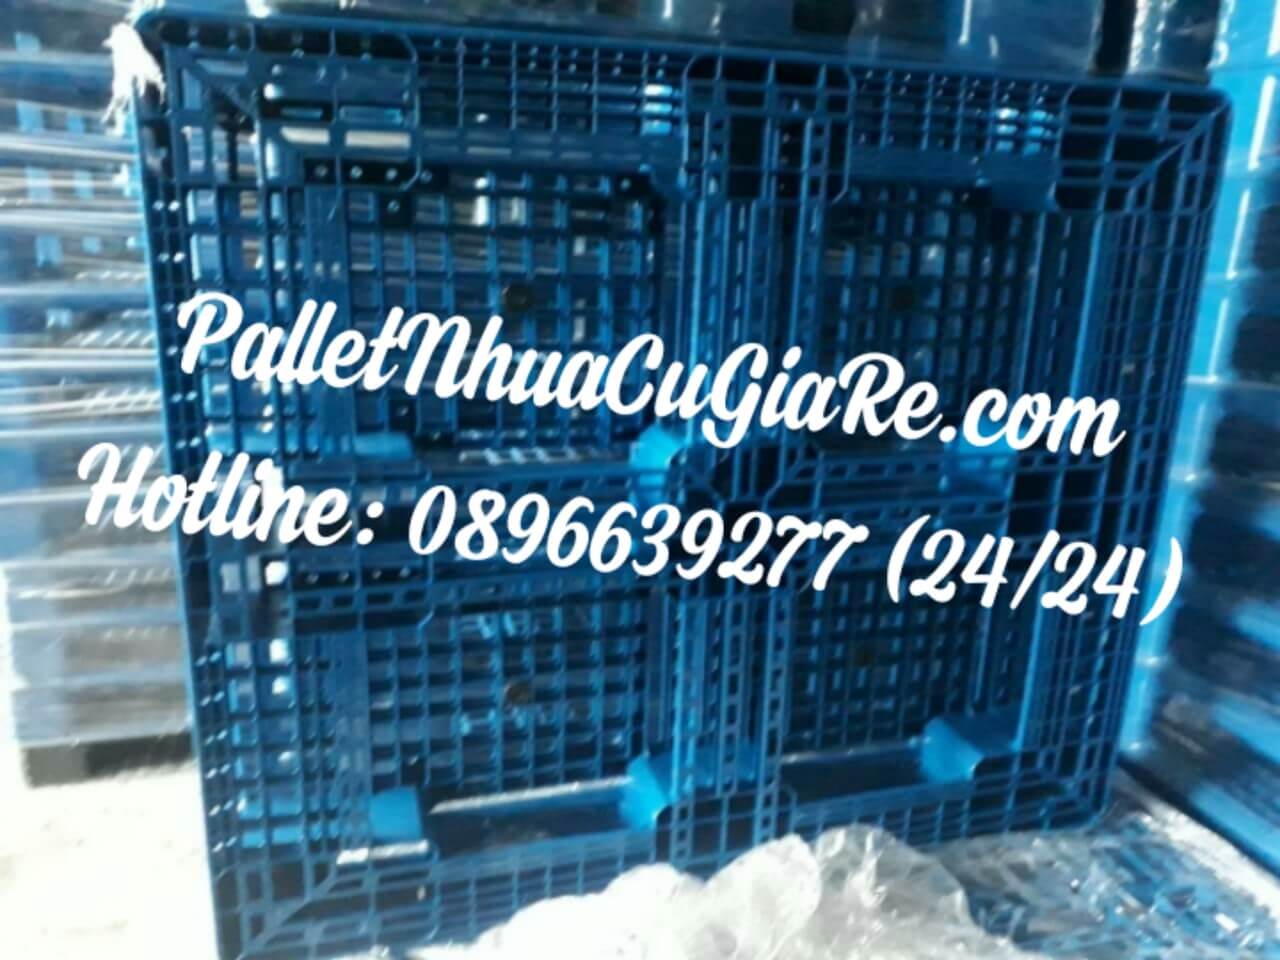 Pallet nhựa Đức Hòa - 0896639277